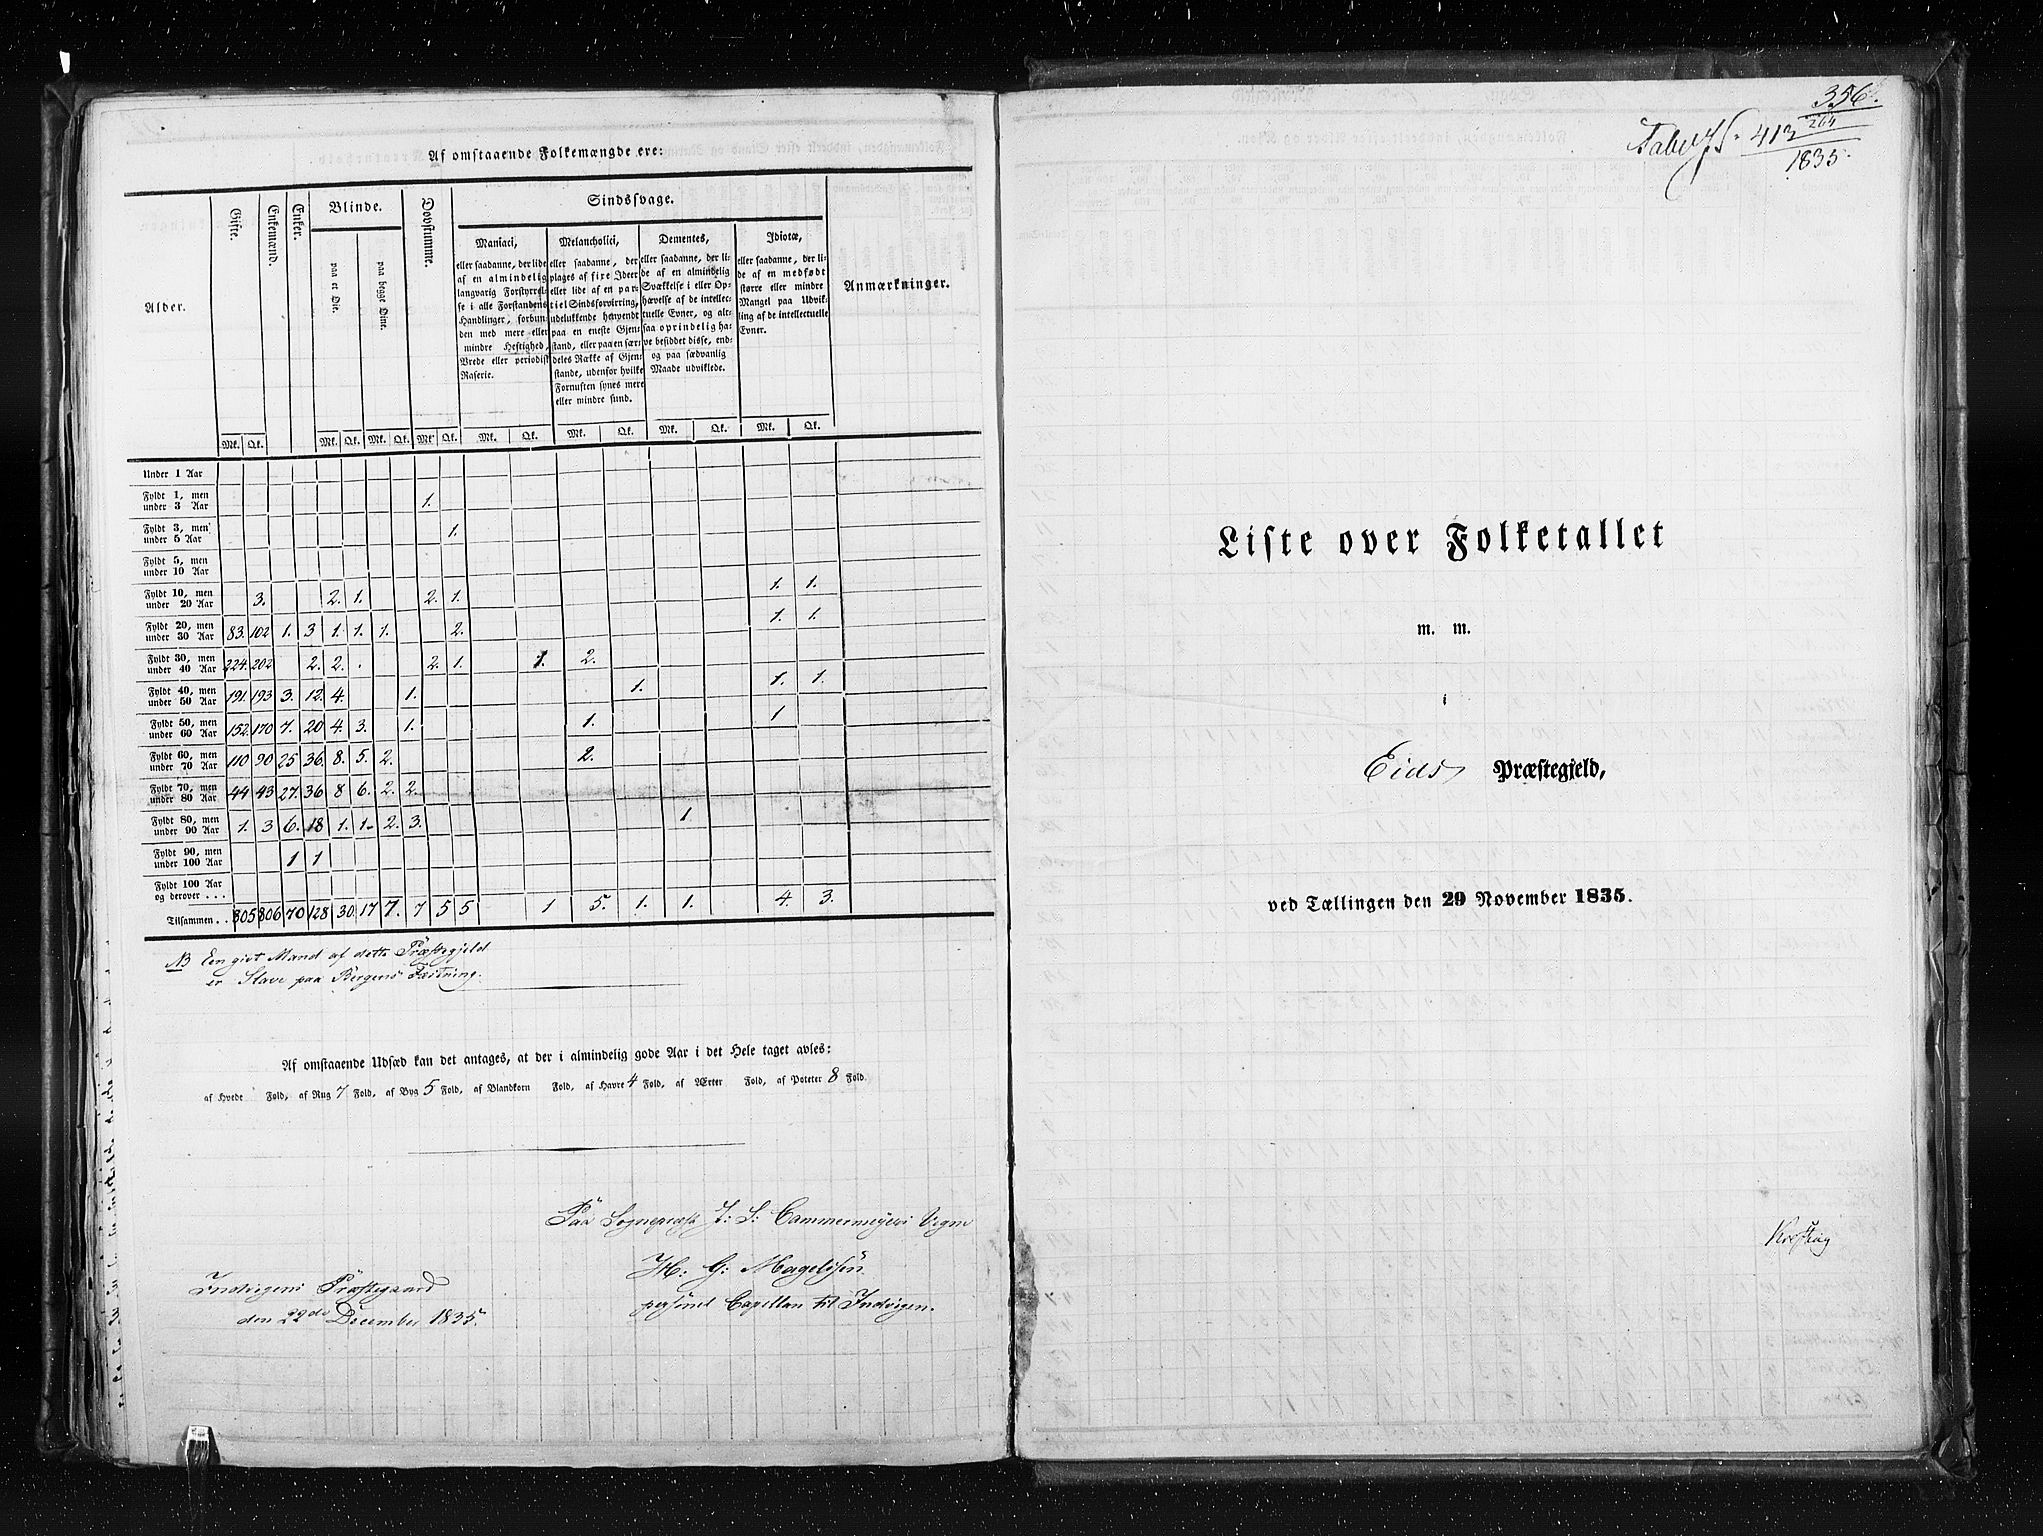 RA, Census 1835, vol. 7: Søndre Bergenhus amt og Nordre Bergenhus amt, 1835, p. 356